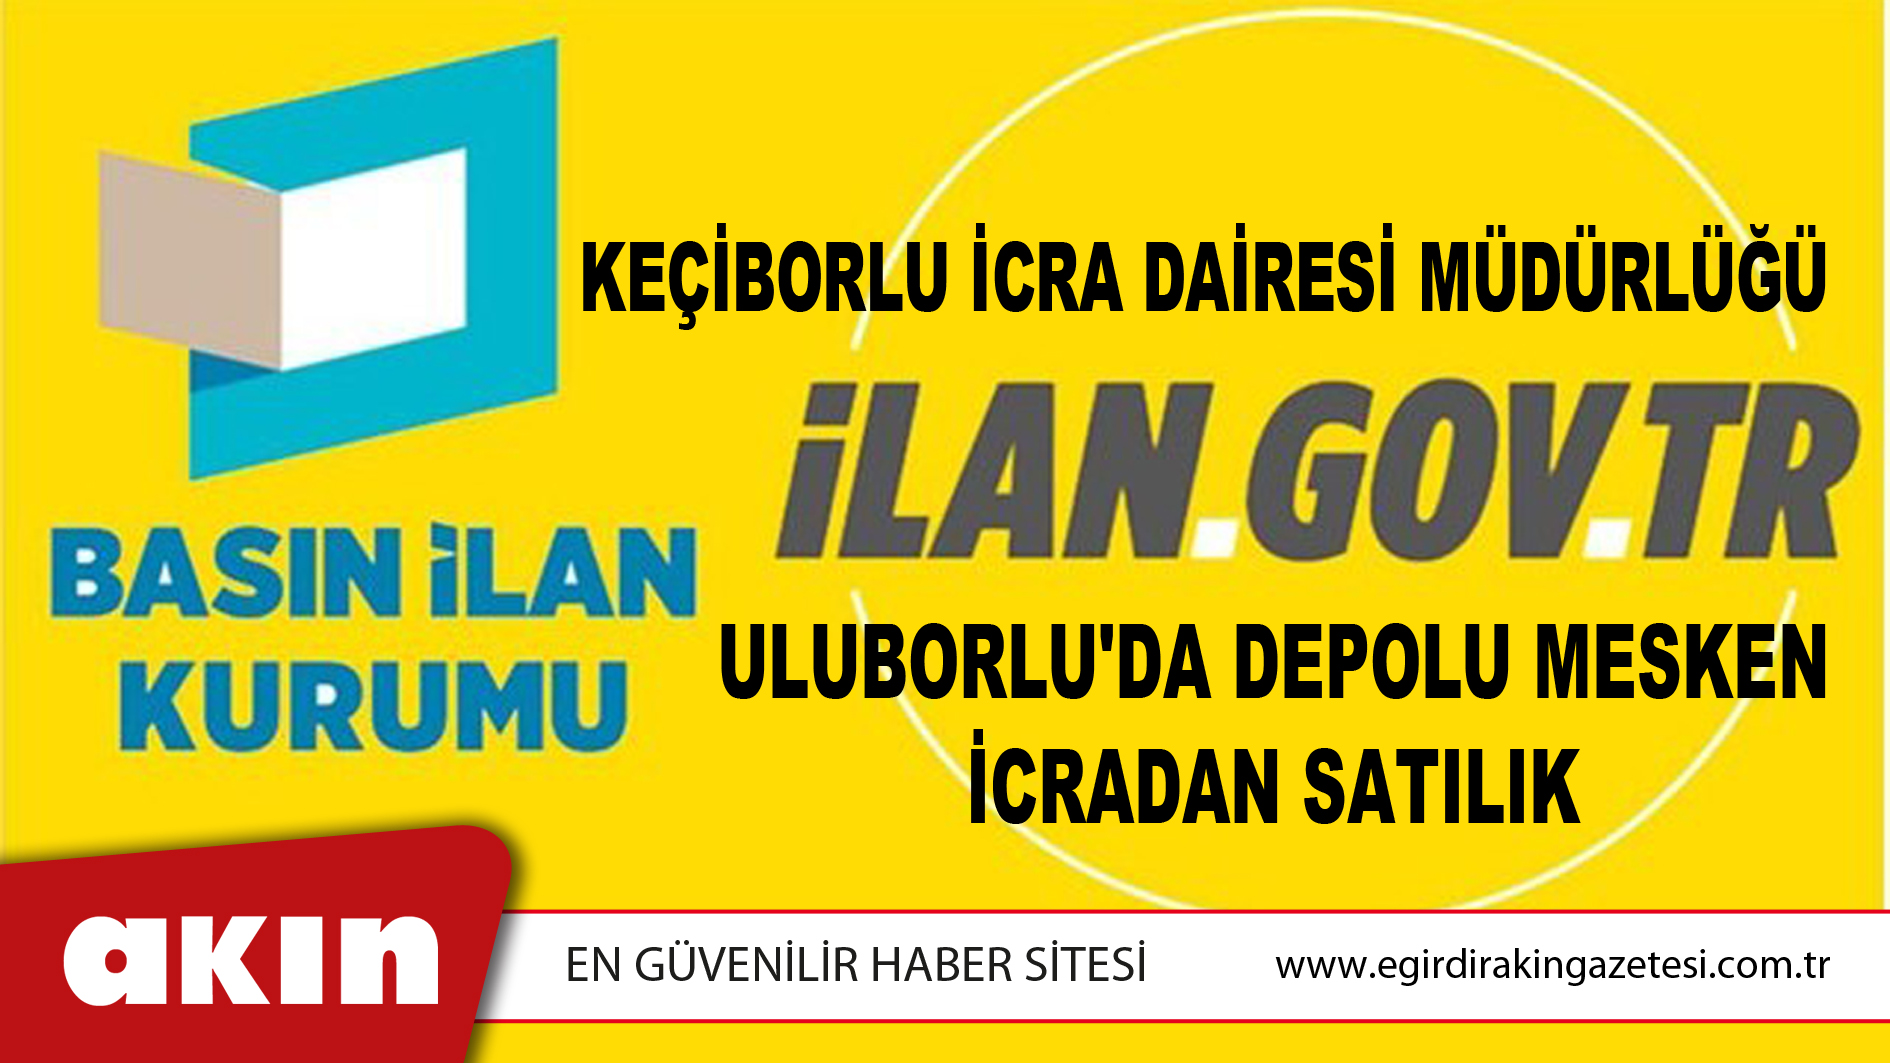 Keçiborlu İcra Dairesi Müdürlüğü Uluborlu'da Depolu Mesken İcradan Satılık